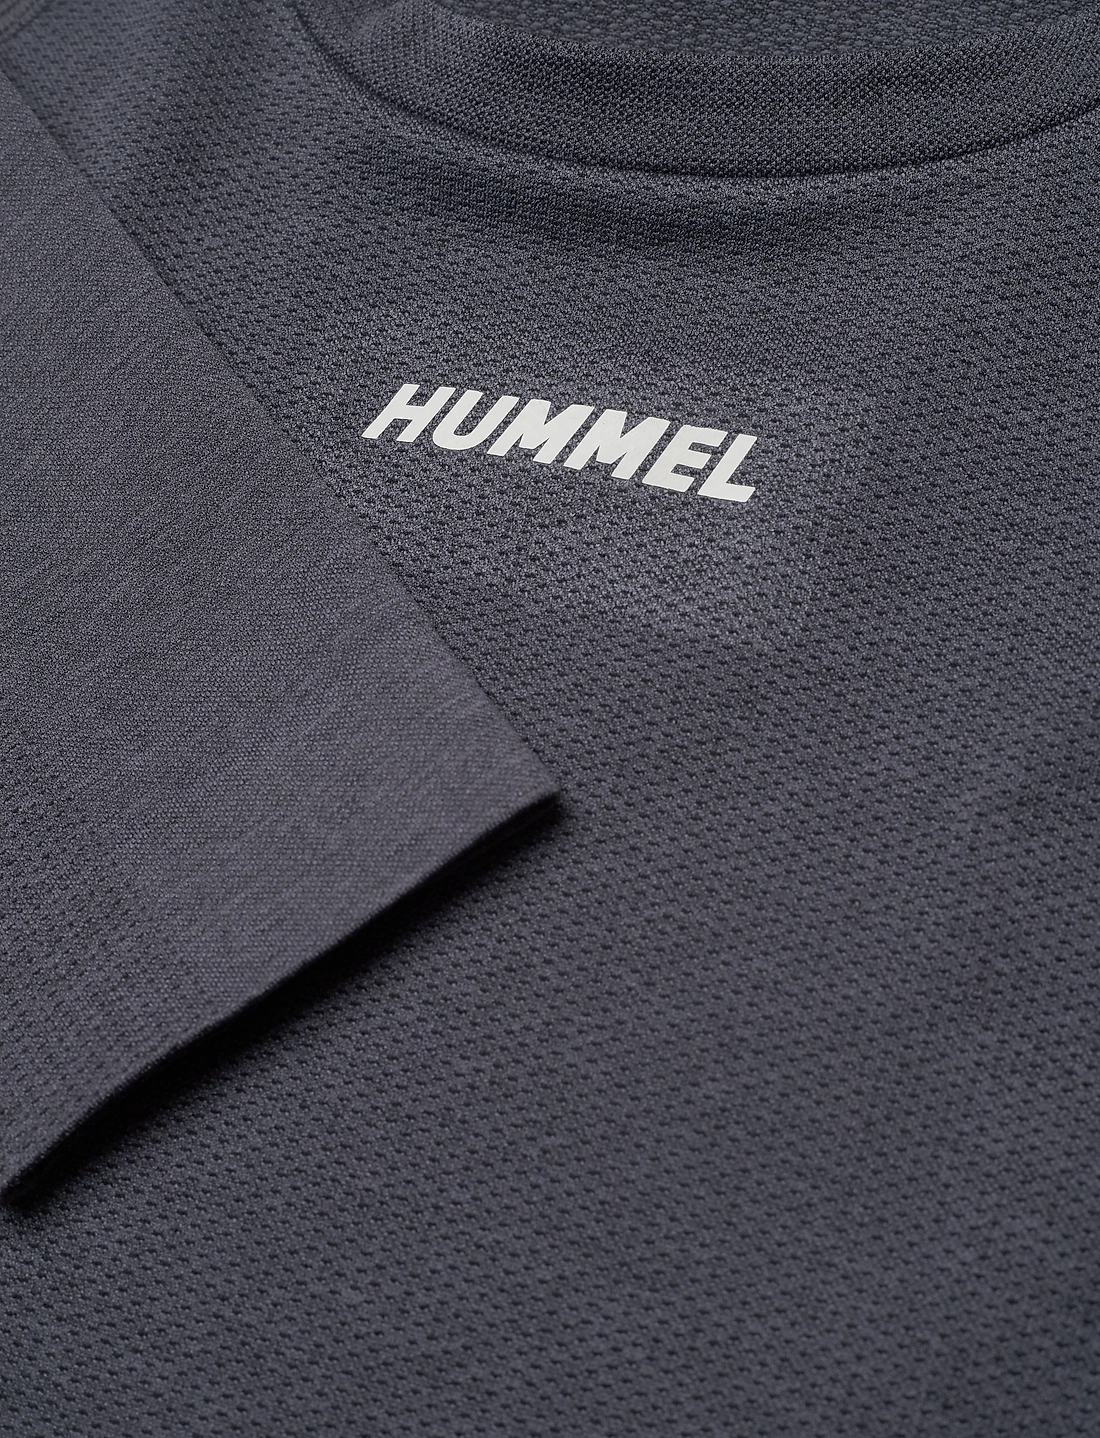 Hummel Hmlte Mike Seamless T-shirt L/s - T-Shirts